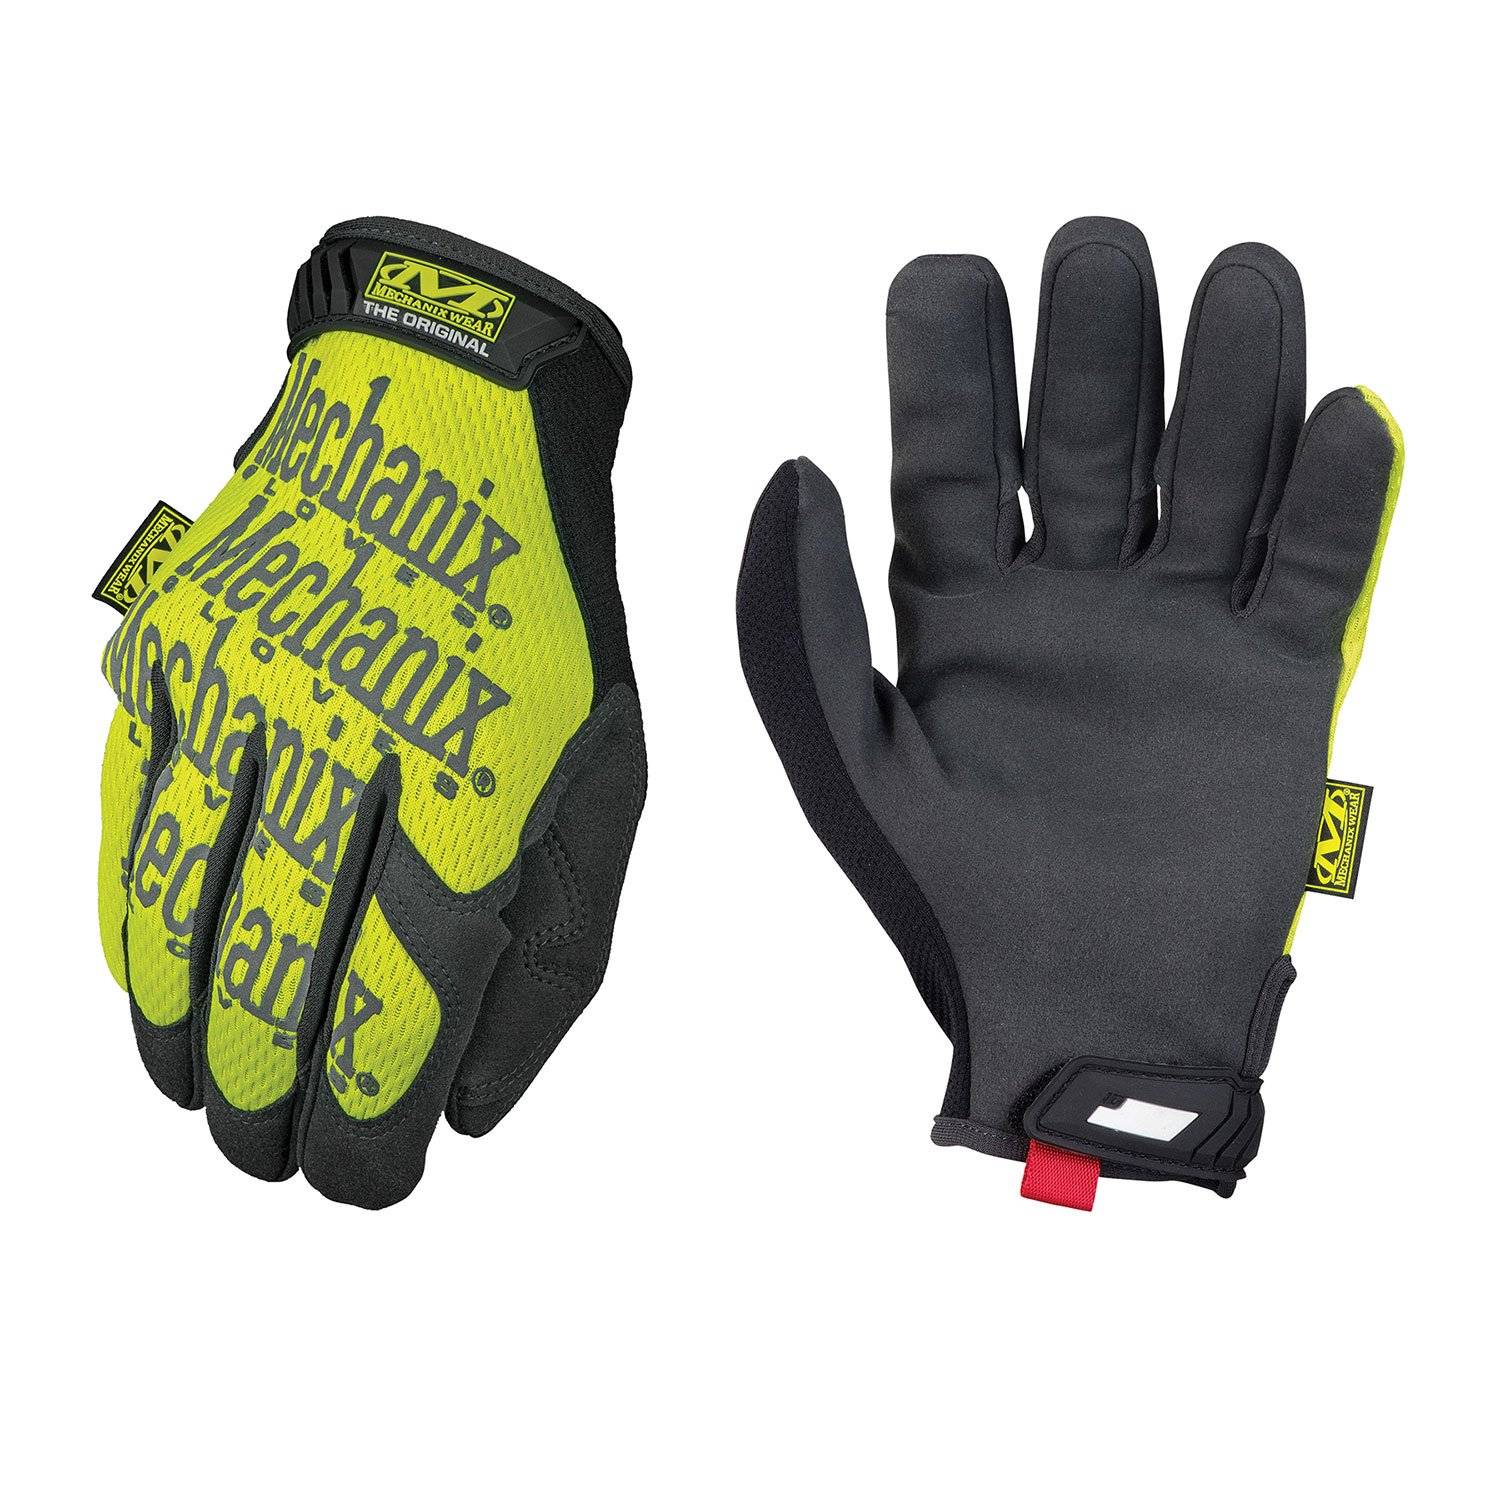 Mechanix Wear Safety Original Gloves